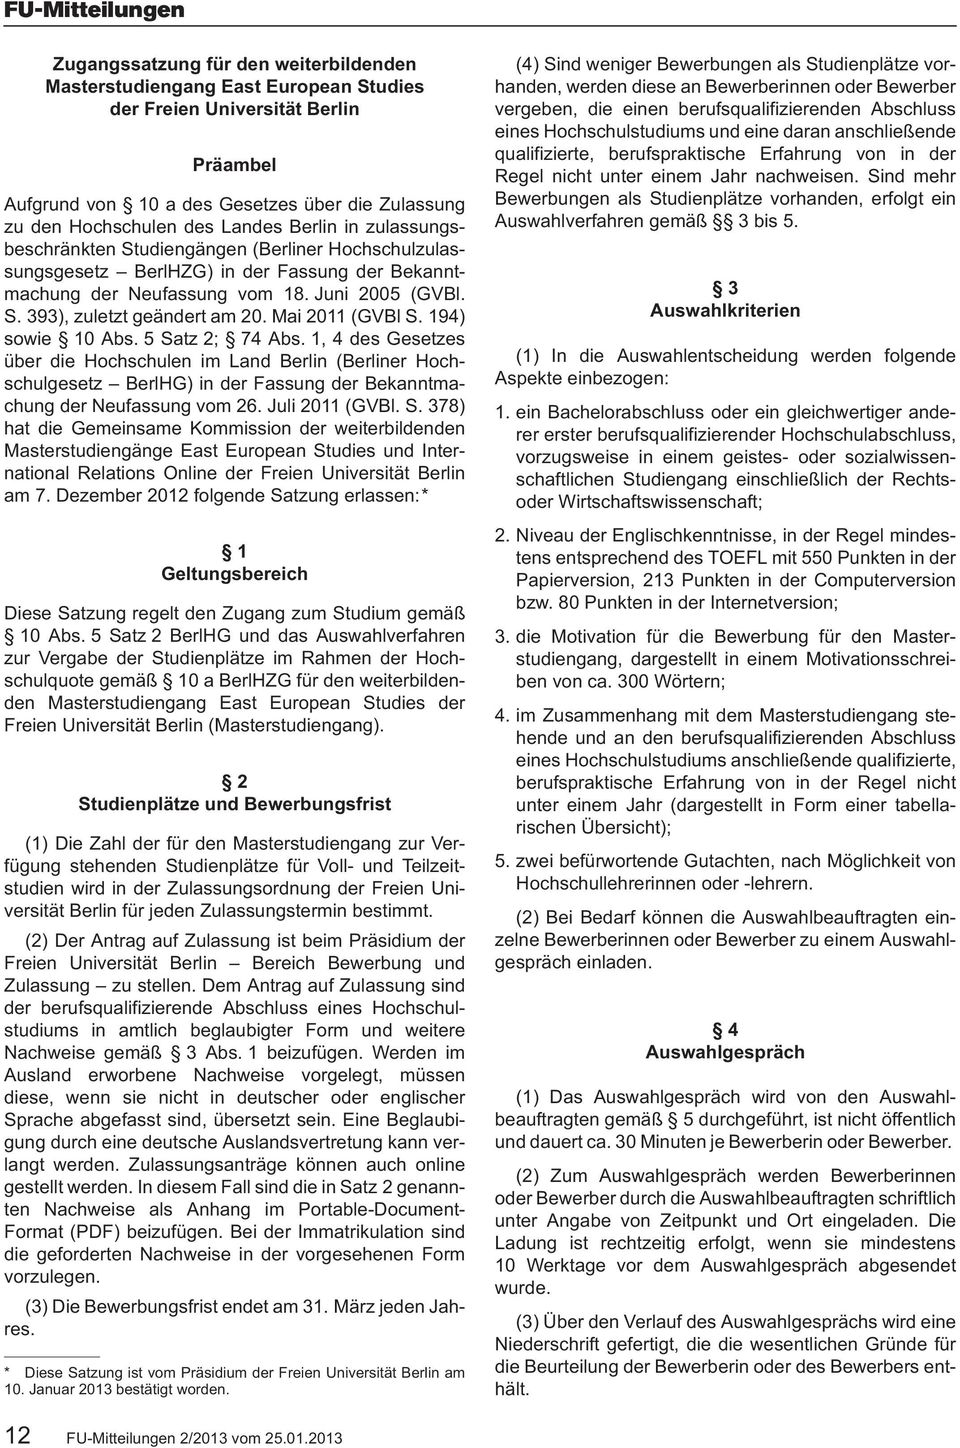 Mai 2011 (GVBl S. 194) sowie 10 Abs. 5 Satz 2; 74 Abs. 1, 4 des Gesetzes über die Hochschulen im Land Berlin (Berliner Hochschulgesetz BerlHG) in der Fassung der Bekanntmachung der Neufassung vom 26.